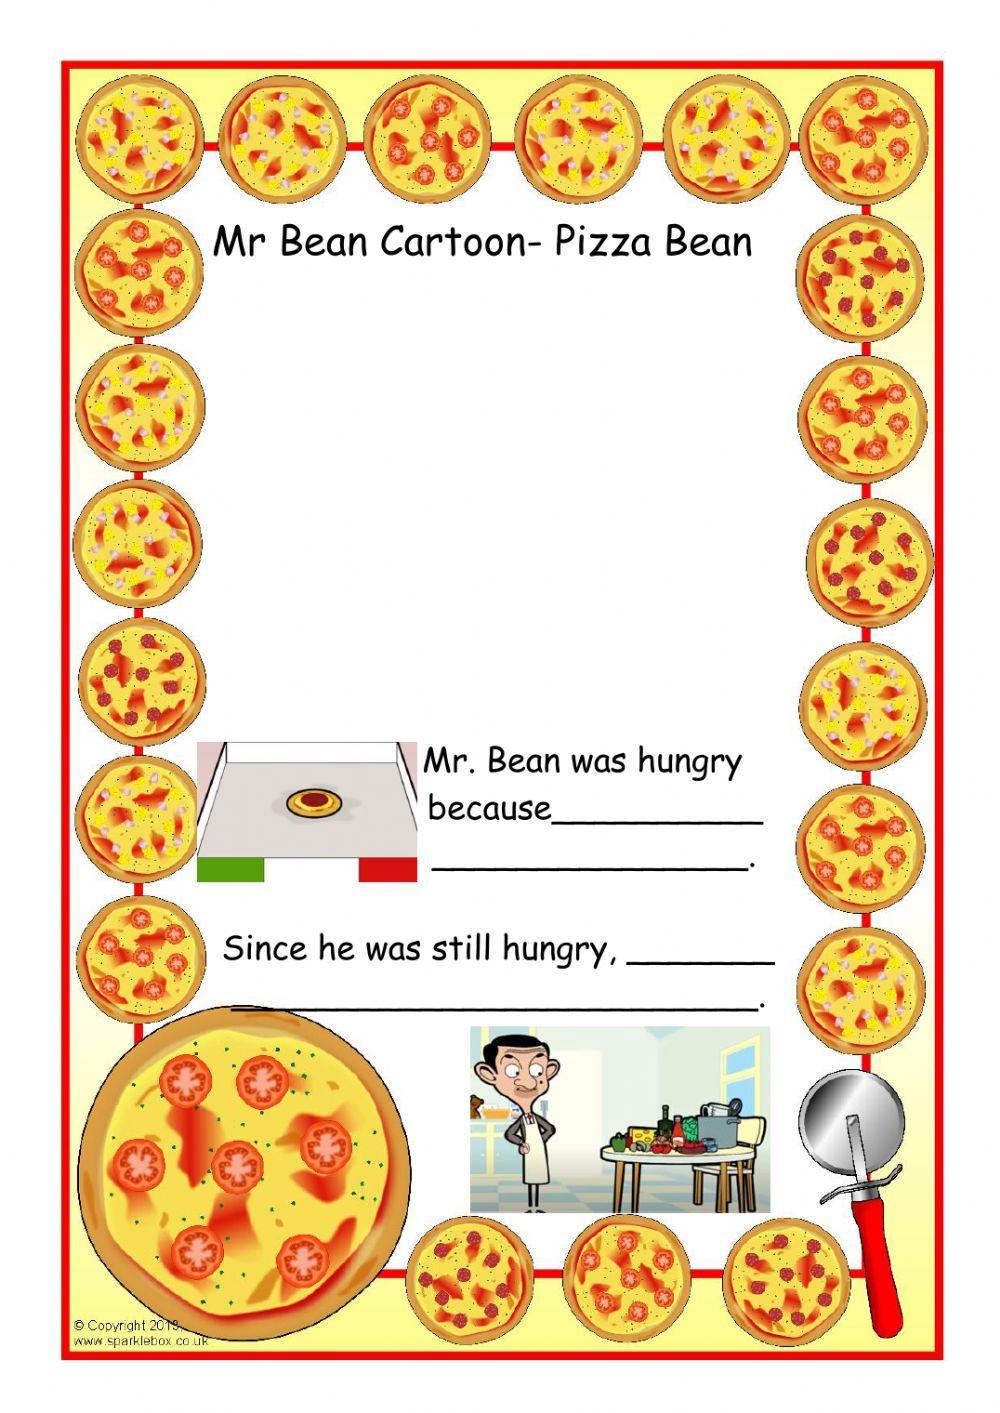 Mr. Bean Pizza Bean